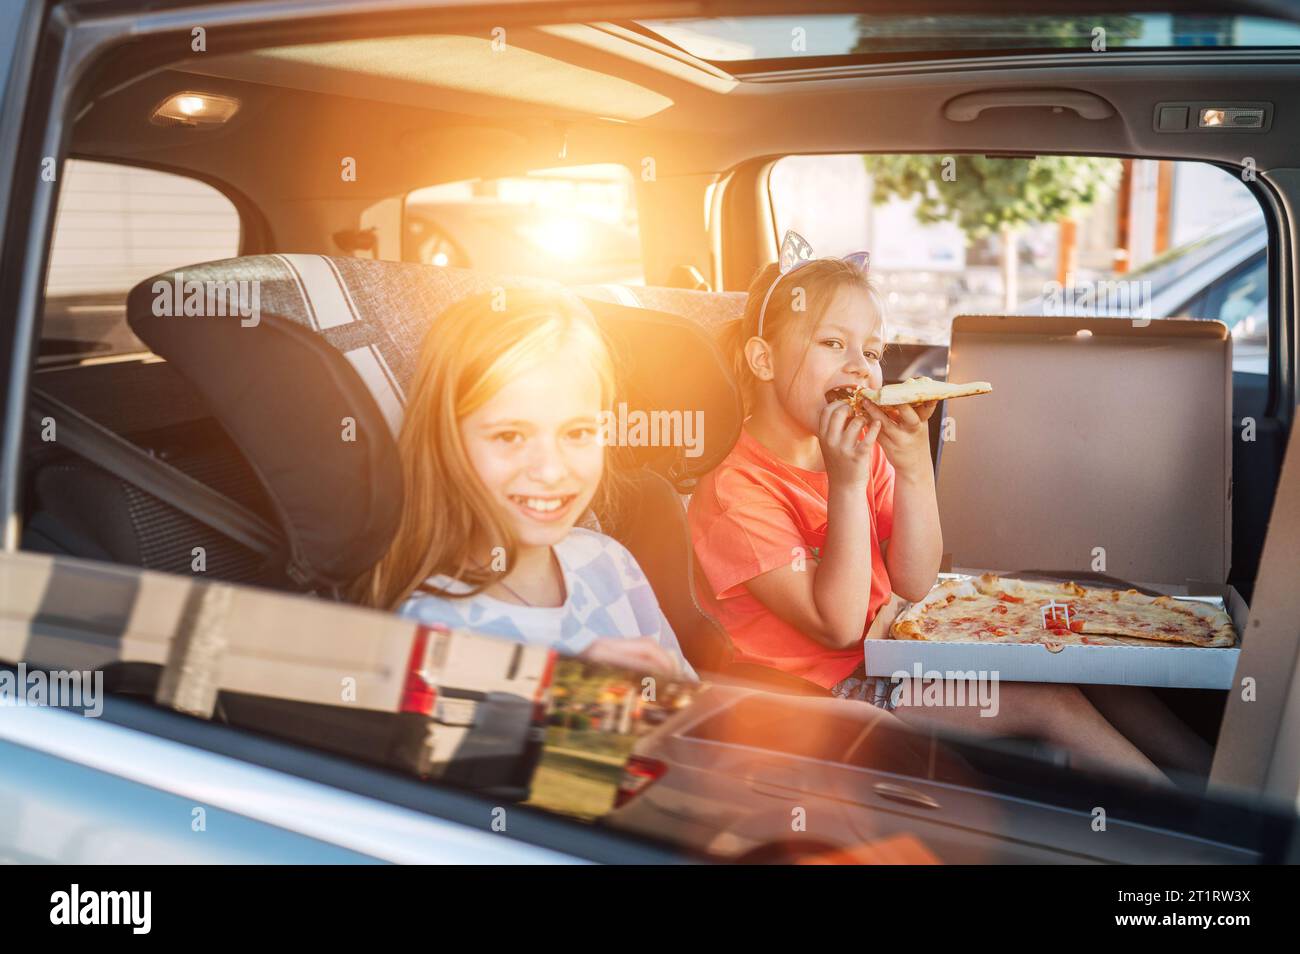 Deux sœurs souriantes et positives sont heureuses de manger une pizza italienne juste cuite dans les sièges d'enfant sur le siège arrière de la voiture. Bonne enfance, restauration rapide ea Banque D'Images